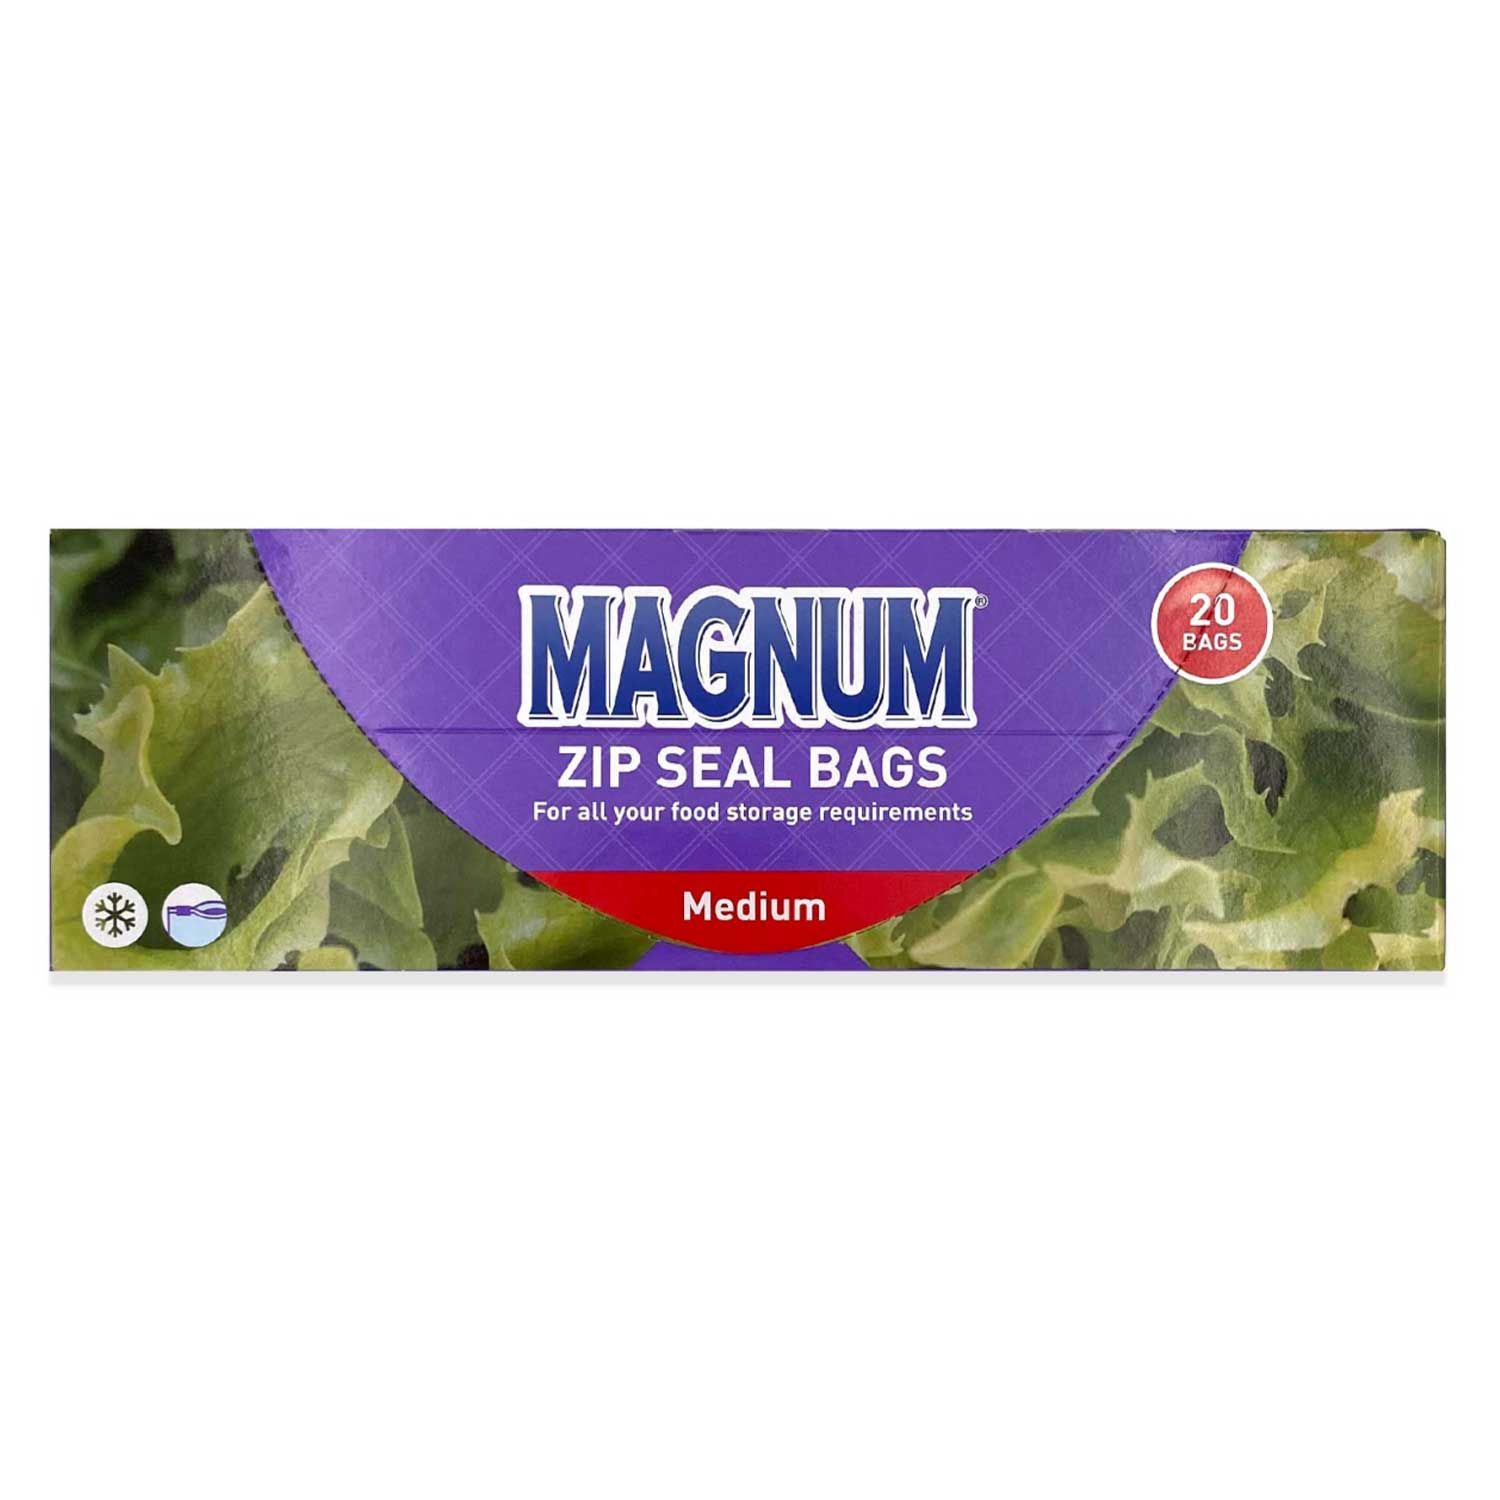 Magnum Sandwich Bags  Medium 20 Pack  ALDI